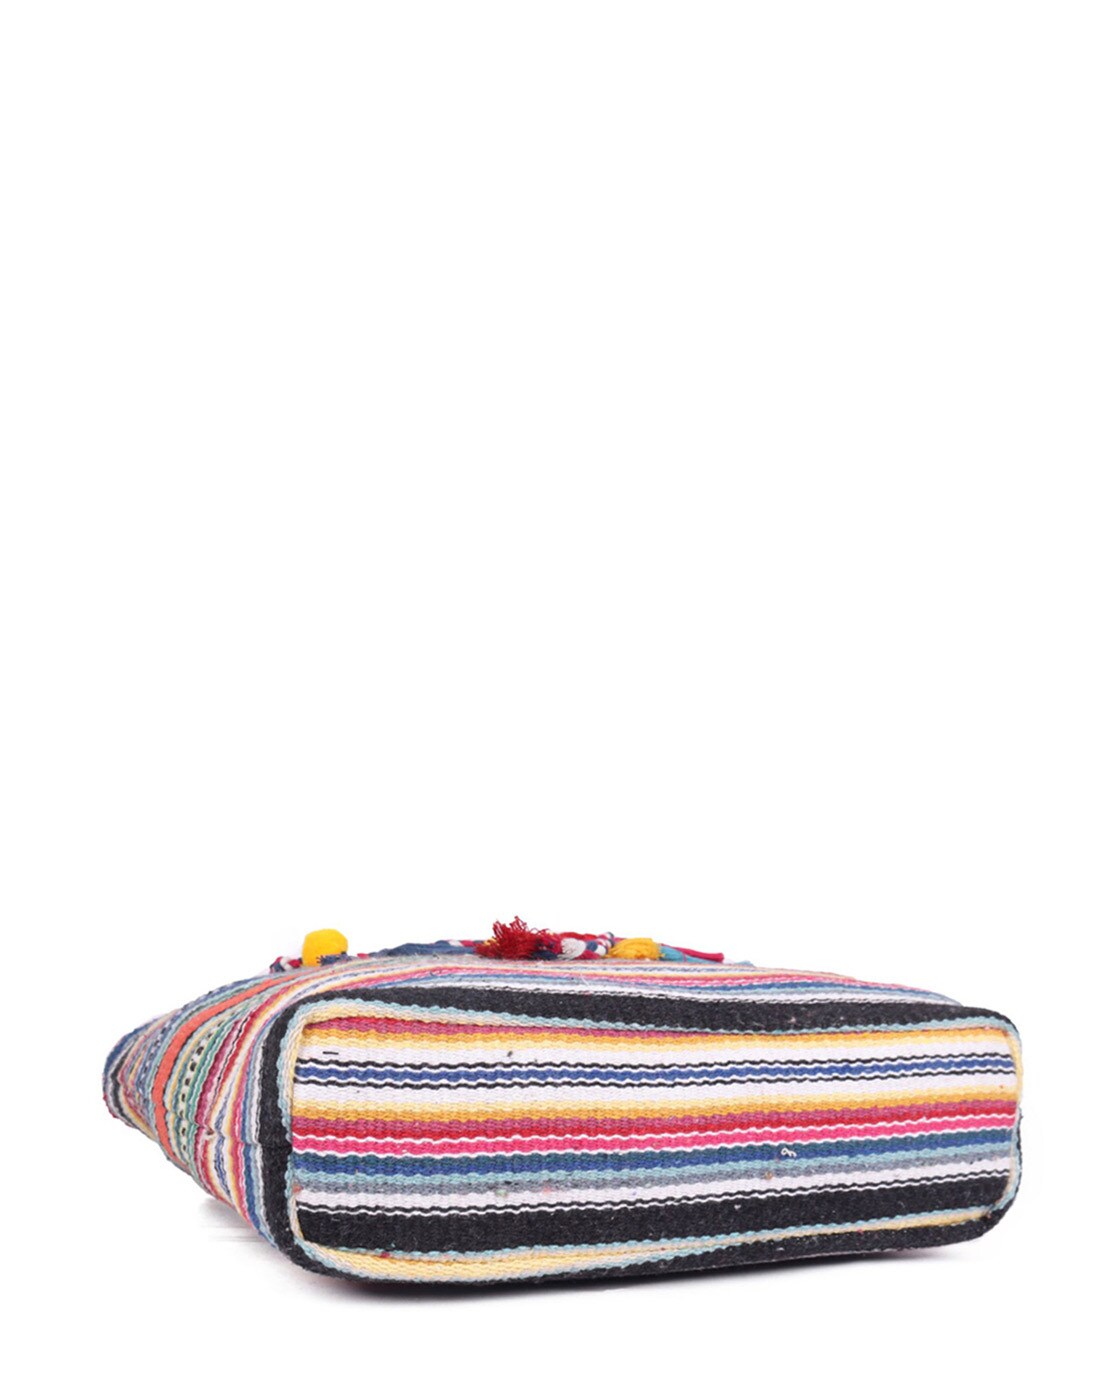 COACH Multi color rainbow striped tote bag | Striped tote bags, Striped  purse handbags, Rainbow stripes